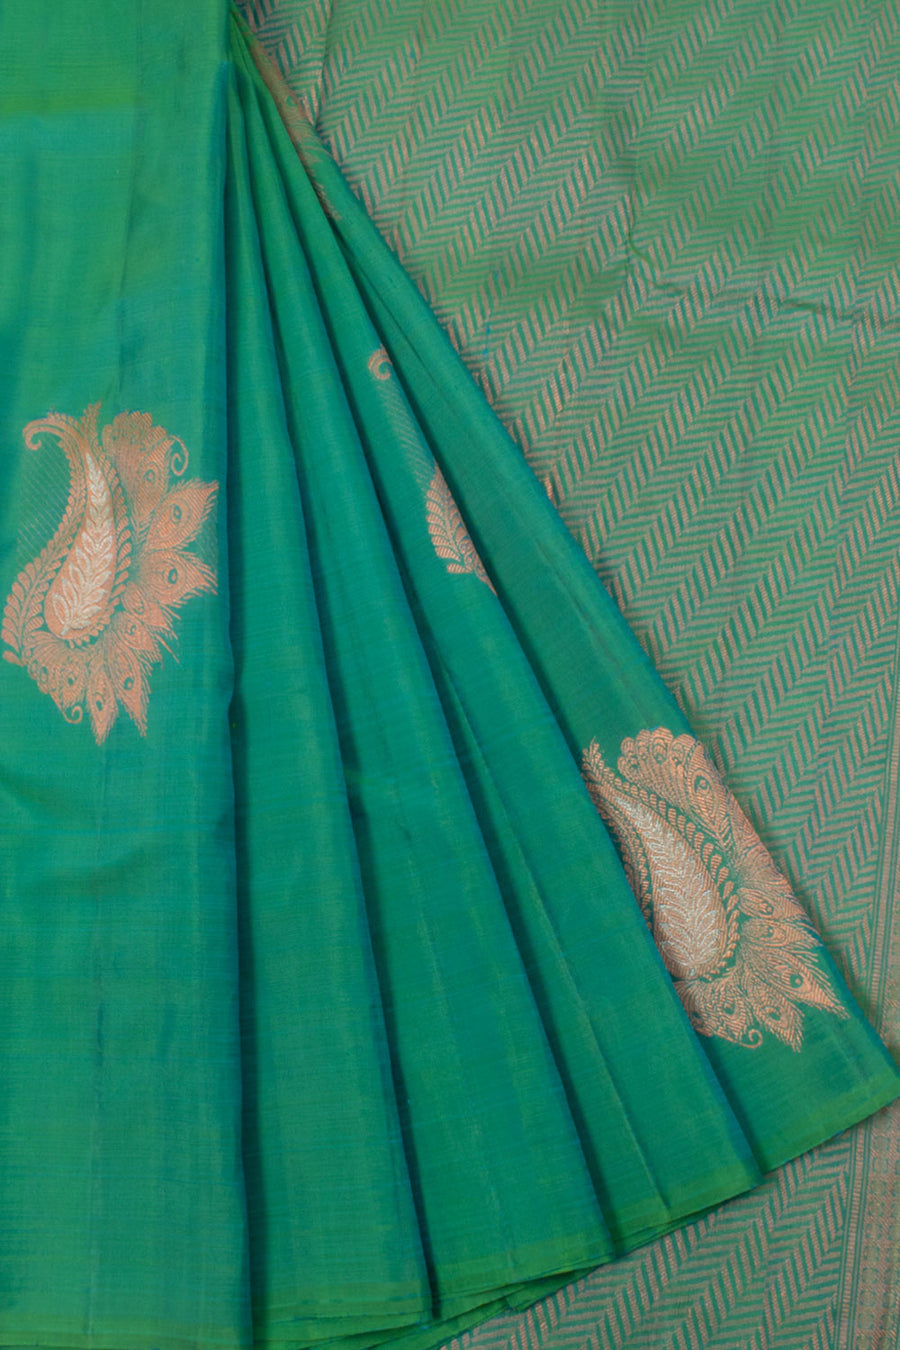 Handloom Borderless Pure Zari Kanjivaram Silk Saree with Meenakari Paisley Motifs